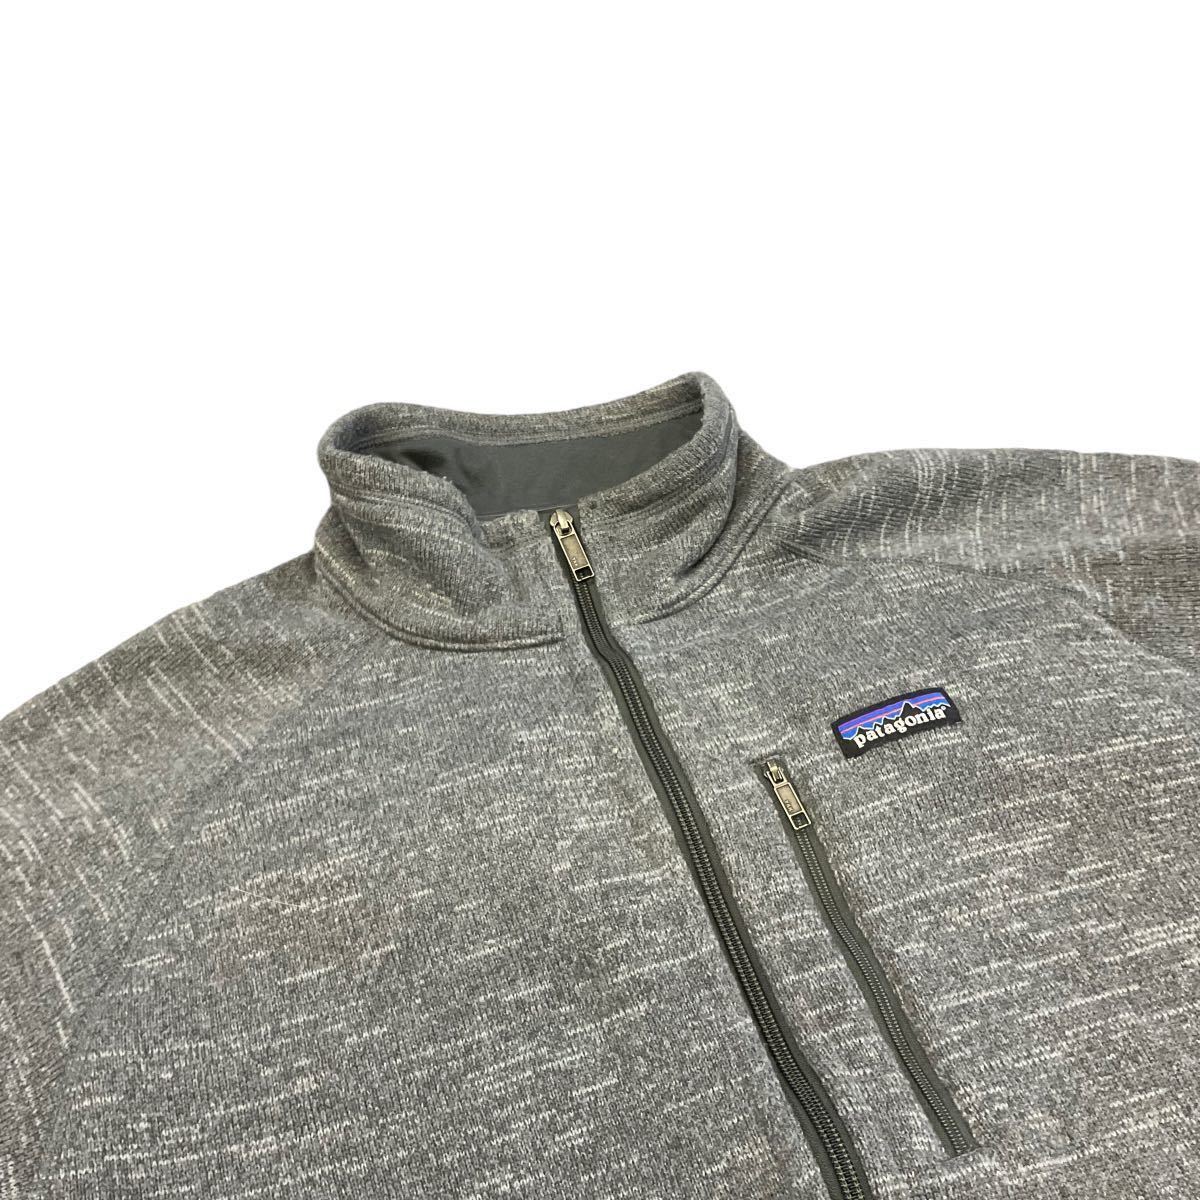 Patagonia ベターセーター XL グレー フリース ジャケット フルジップ ジップアップ Better Sweater パタゴニア 2015年製 25527_画像2